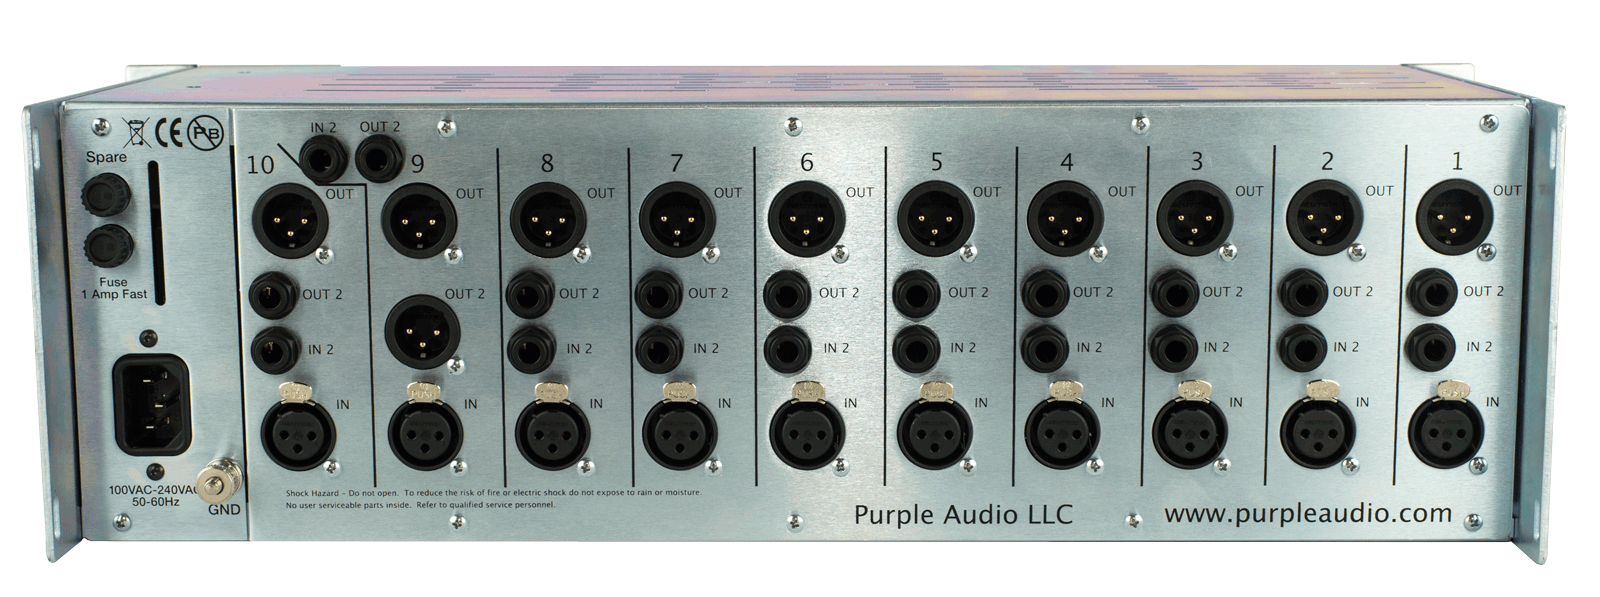 Purple Audio Sweet Ten Rack - Studio Rack - Variation 3